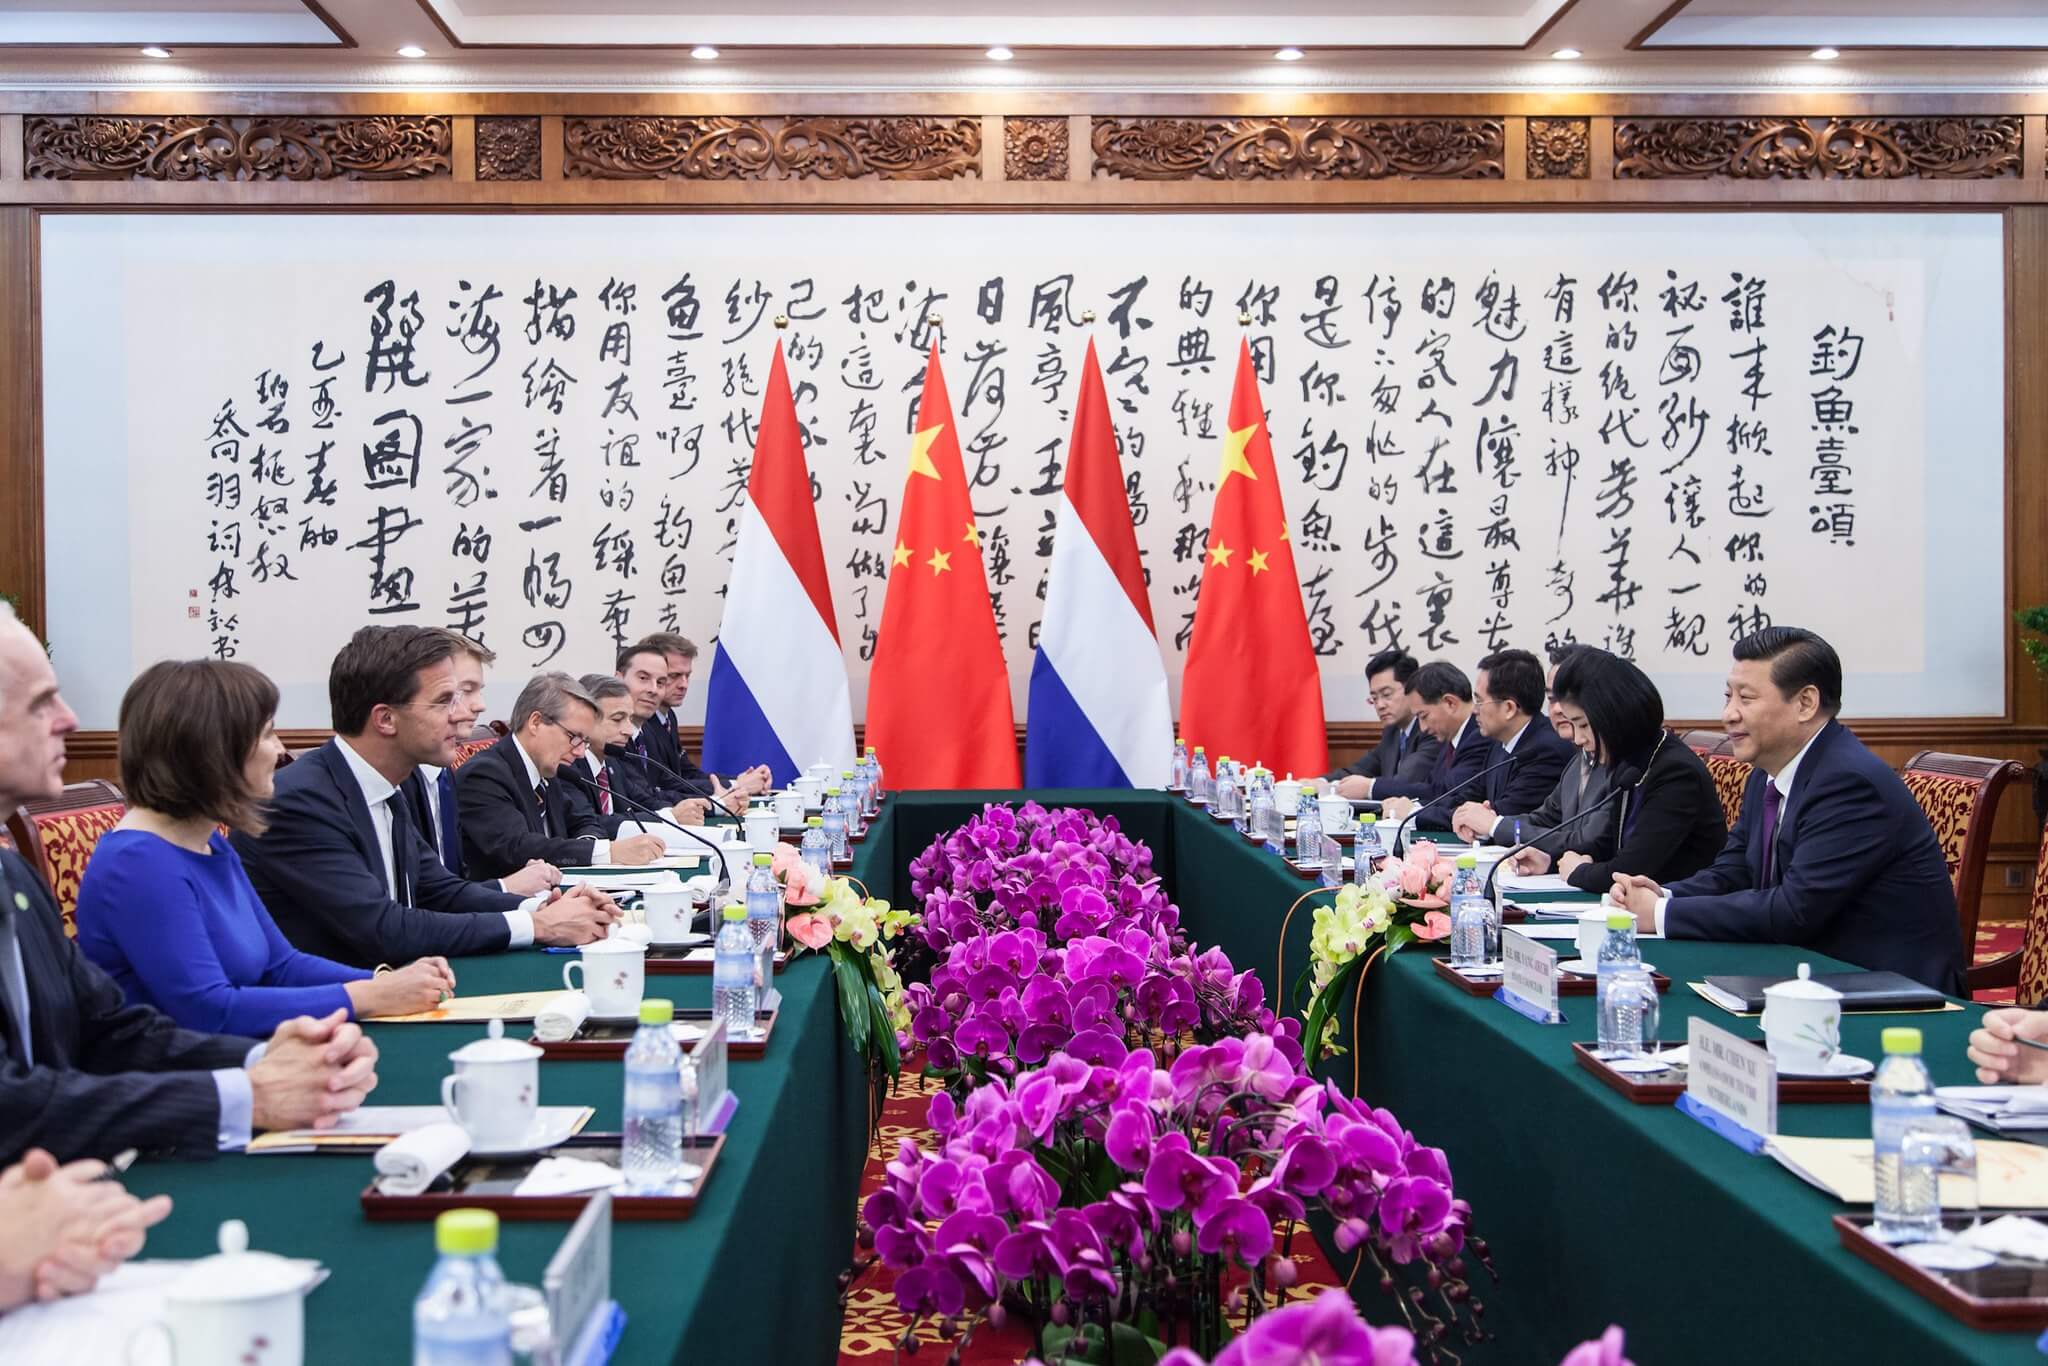 President Xi Jinping ontvangt minister-president Rutte en minister Ploumen op de eerste dag van hun bezoek aan China in 2013. © Flickr / Minister-president Rutte